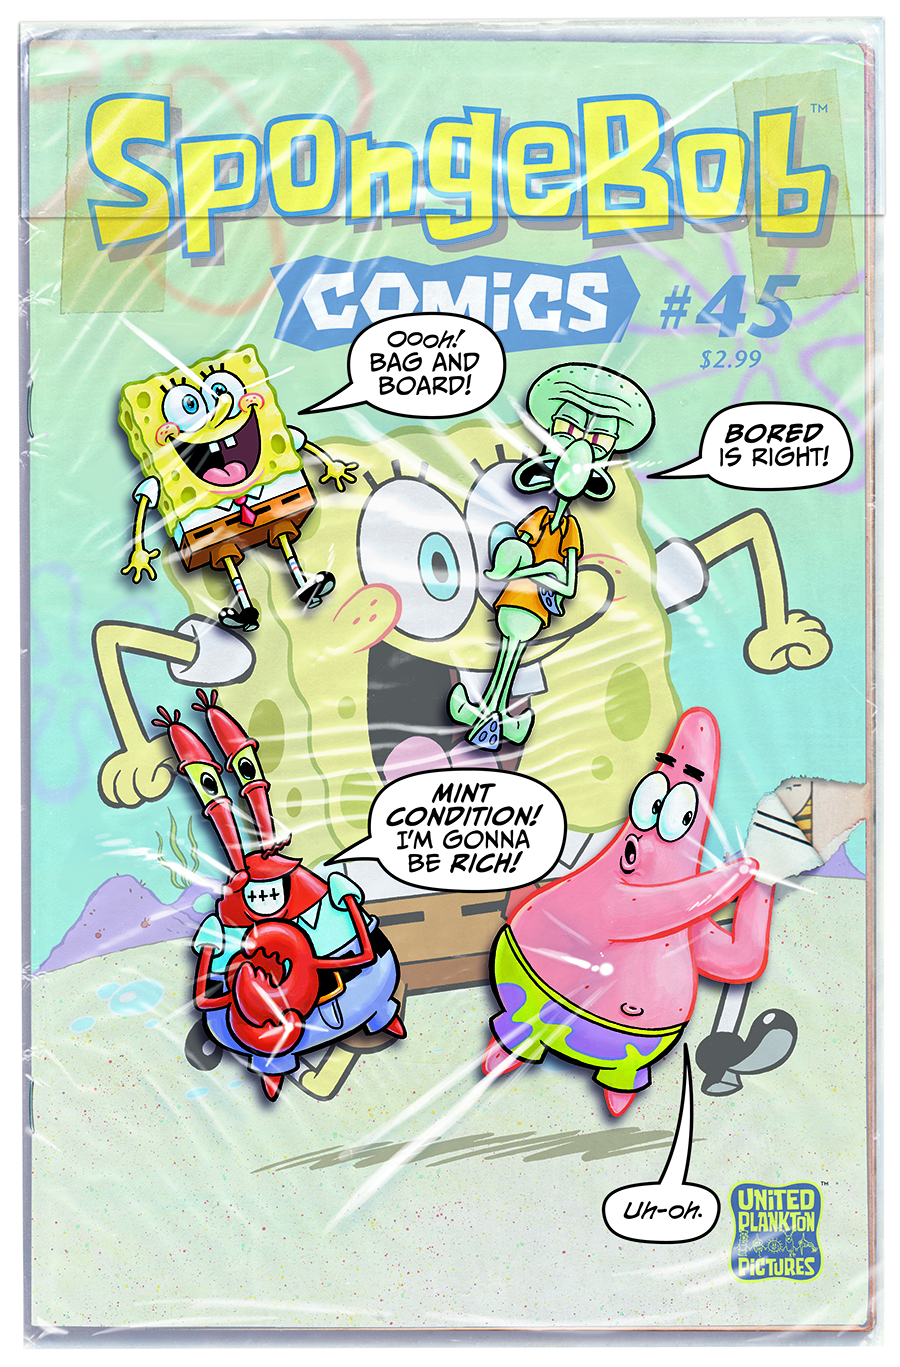 SPONGEBOB COMICS #45